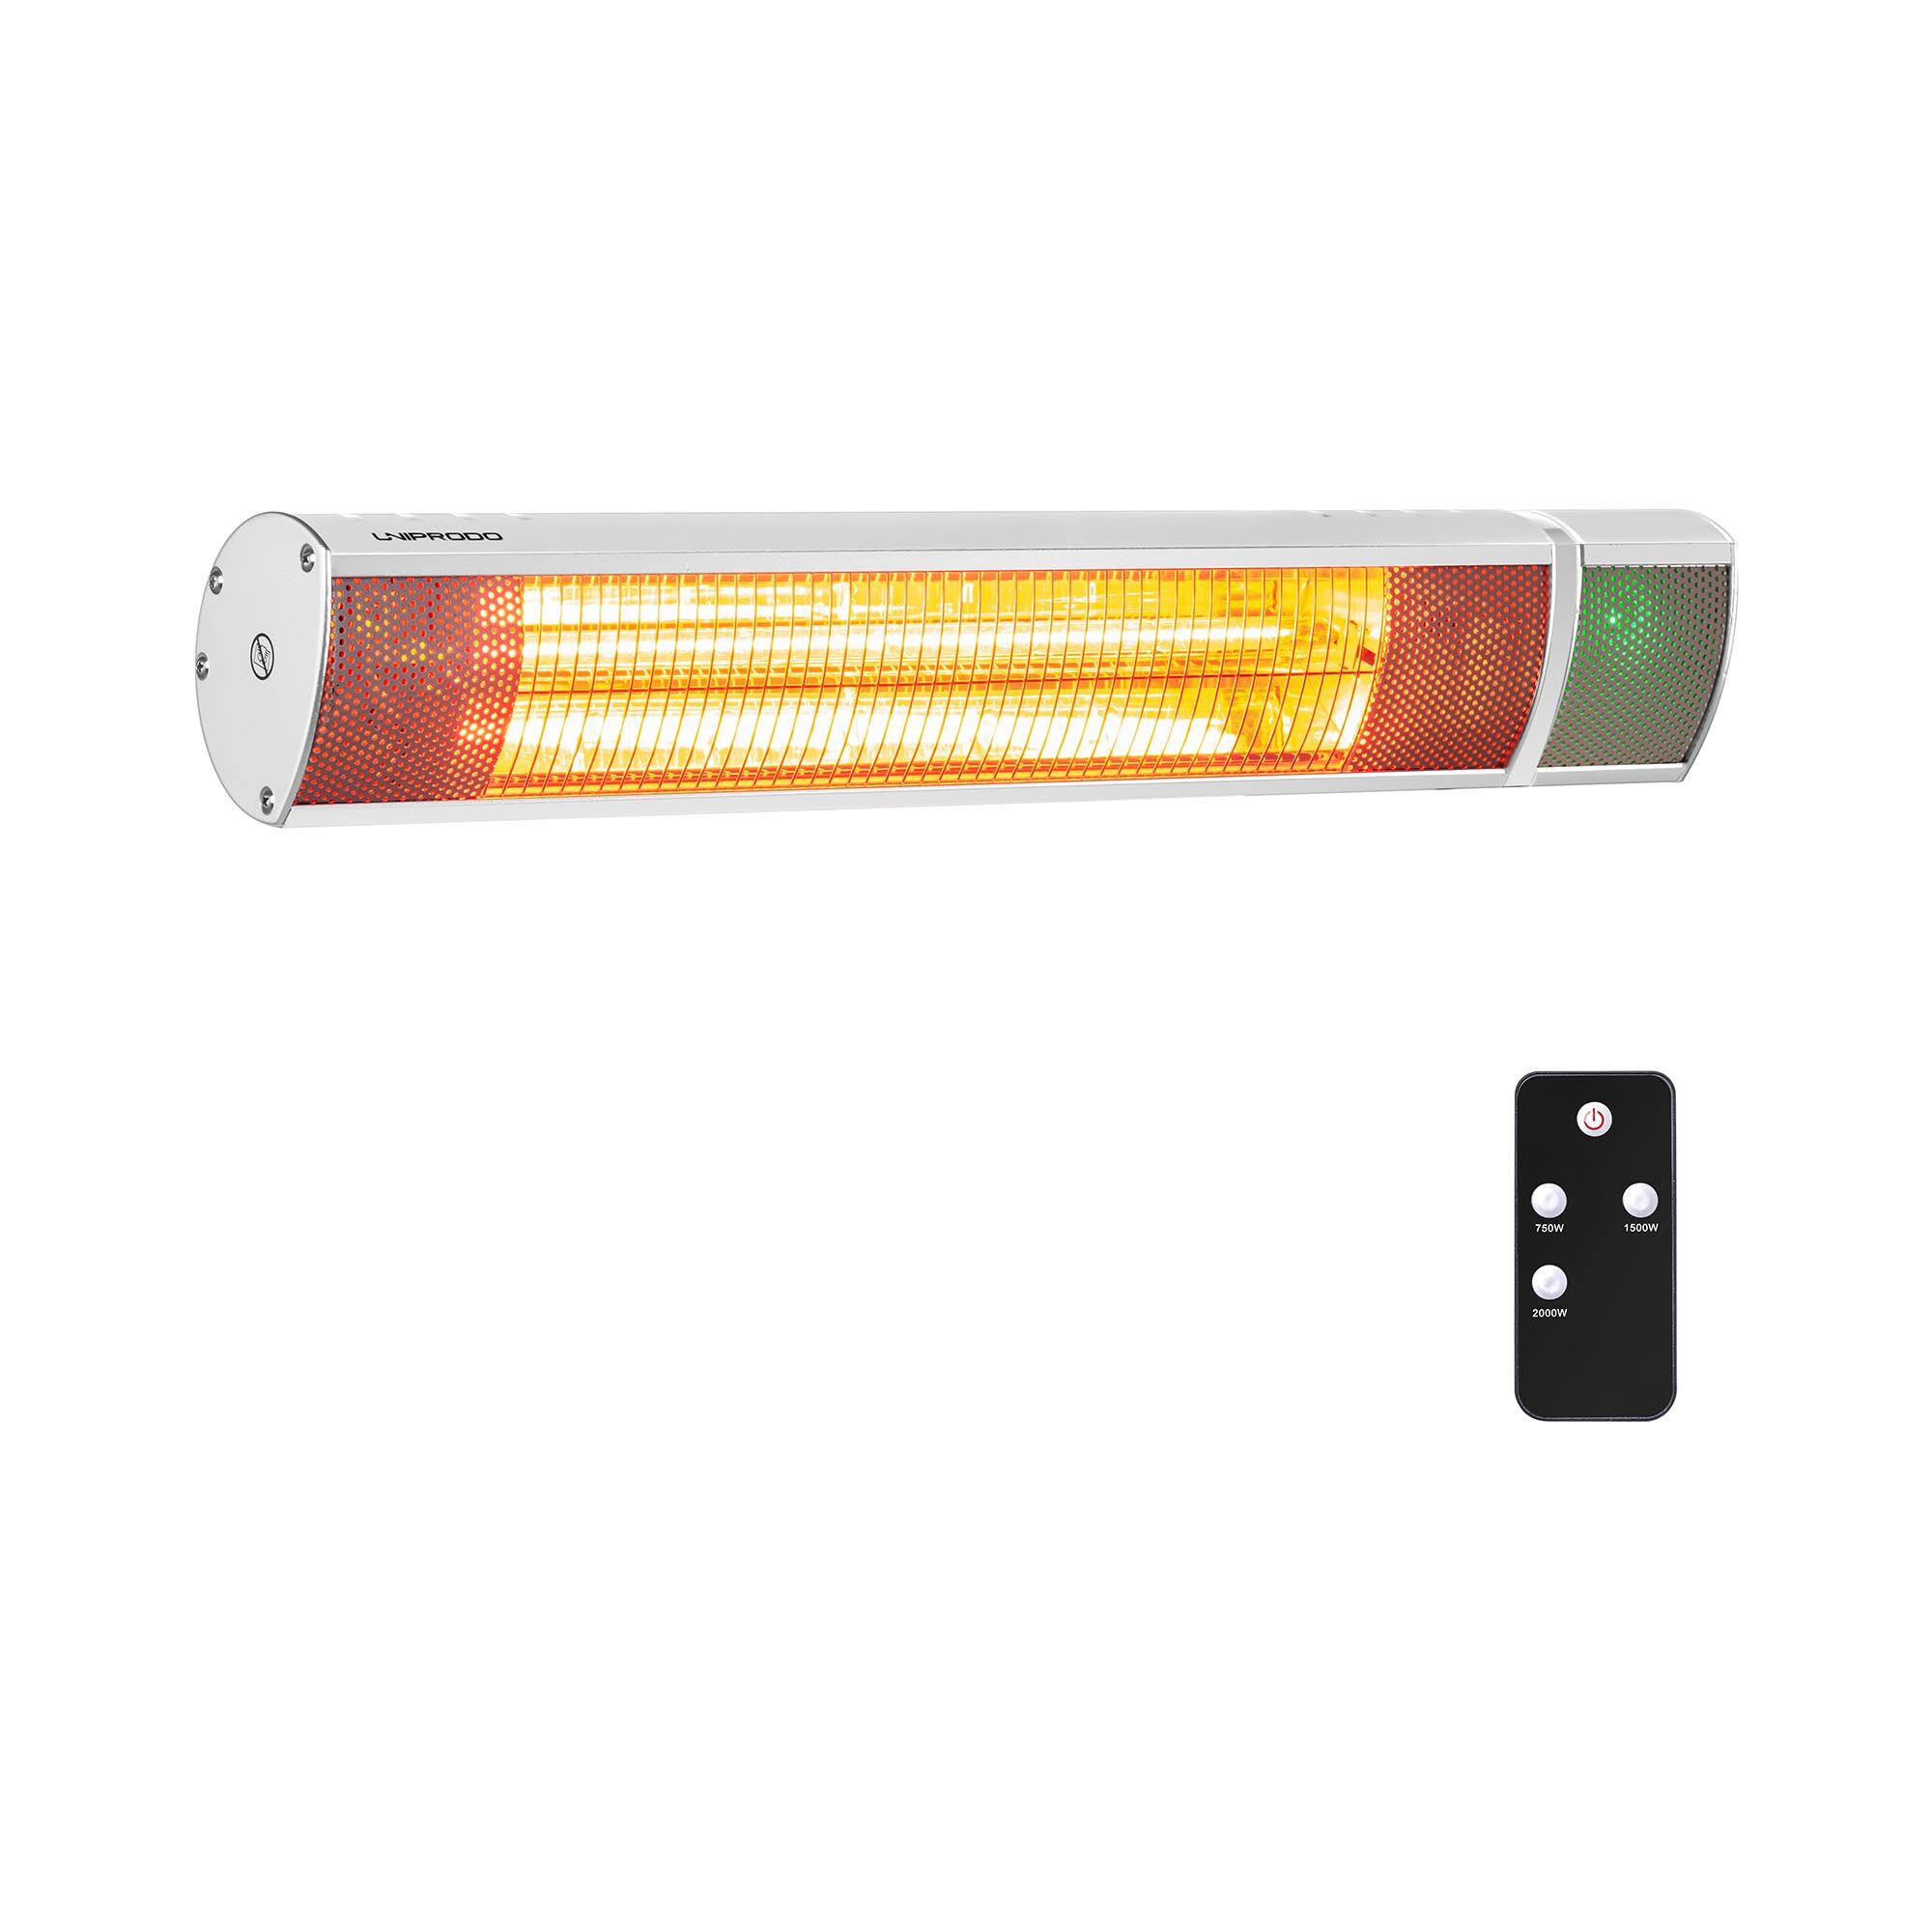 Uniprodo Infrared Patio Heater - 2,000 W - remote control